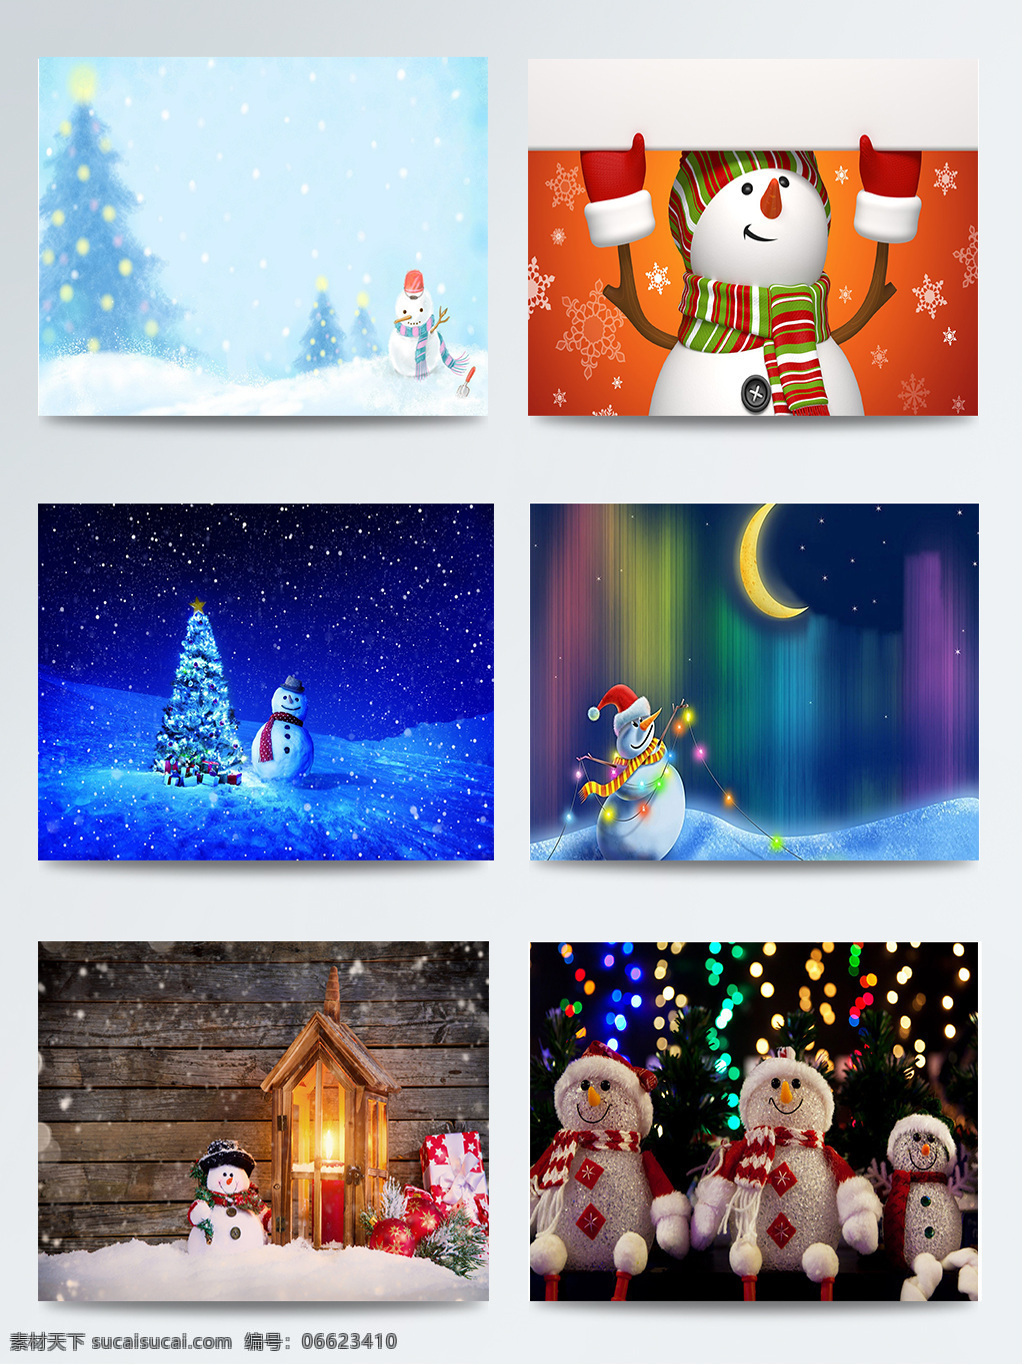 组 冬季 背景 雪人 图集 白色 插画 创意 圣诞节 水墨 元旦节